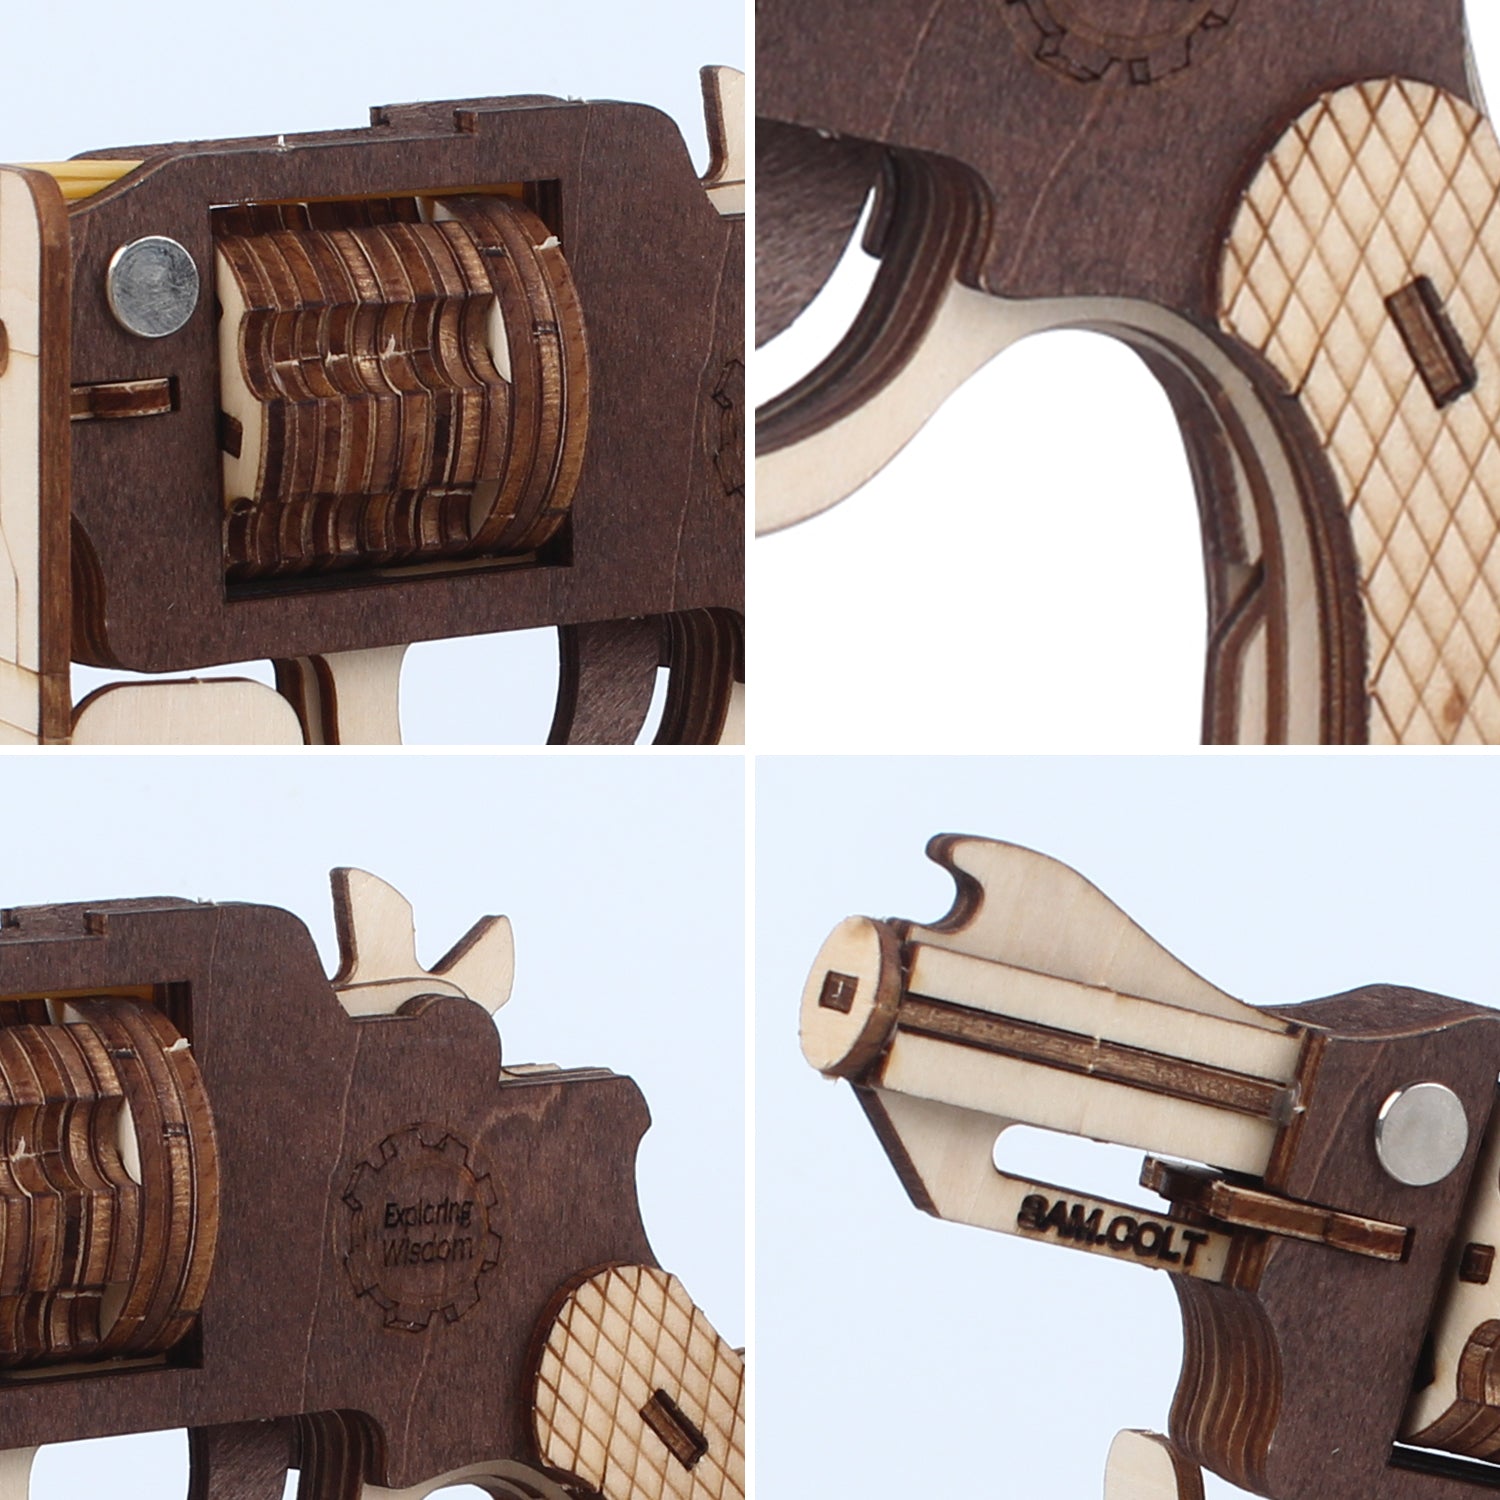 TSZH 006 DIY Guns Kit |Birthday Gift | Hobby